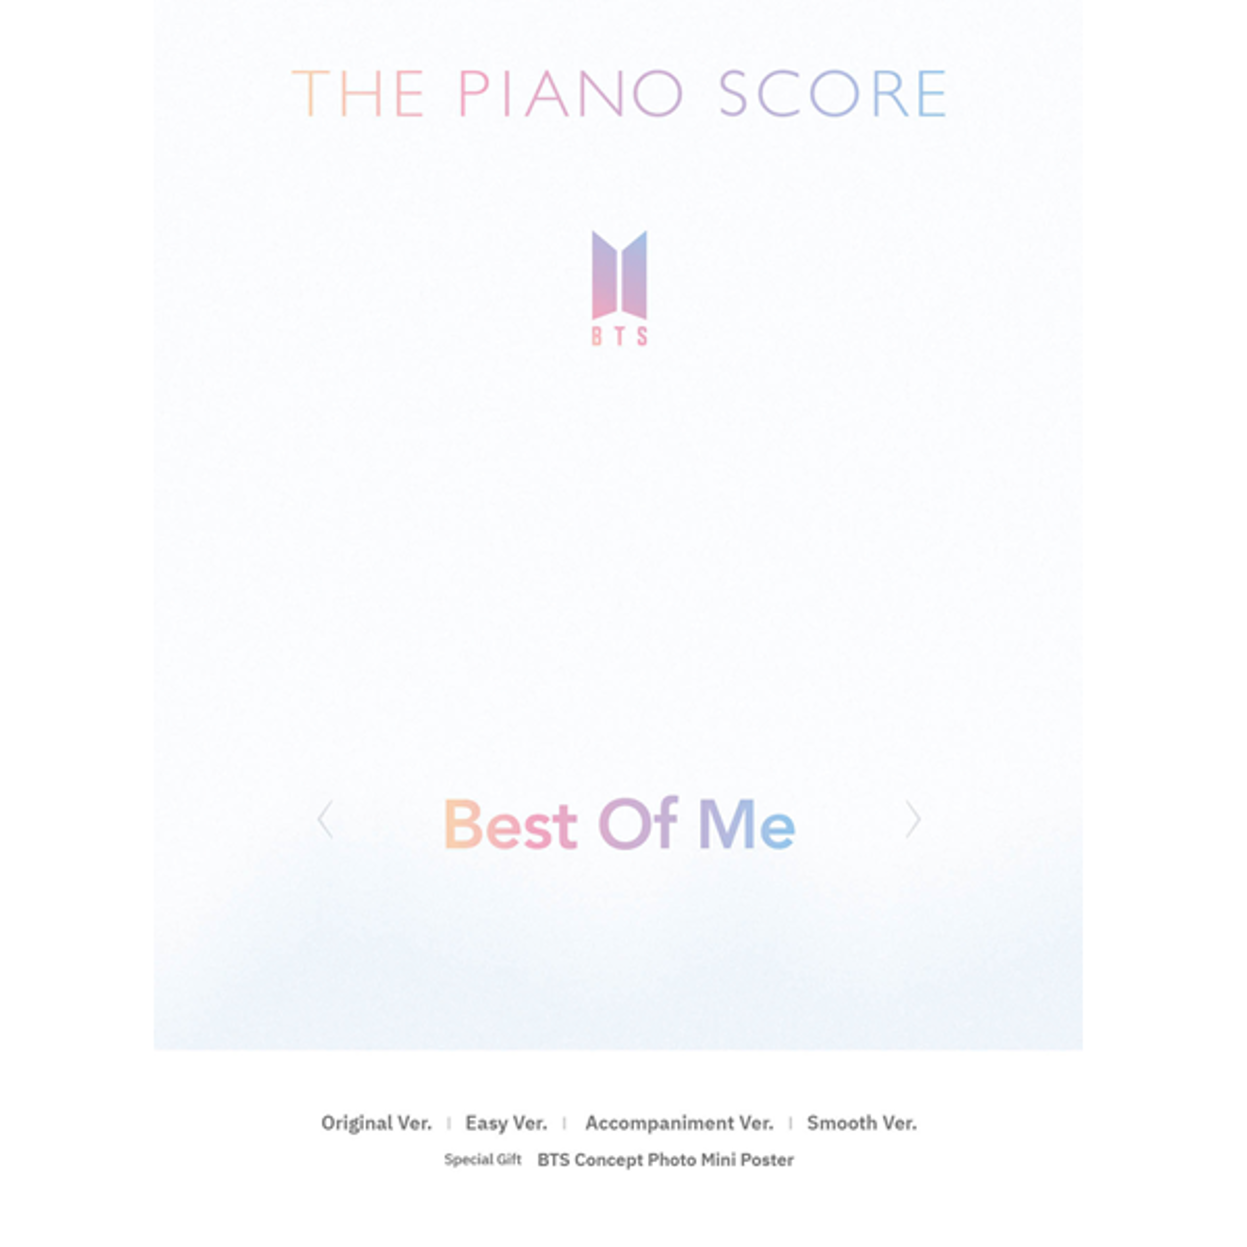 THE PIANO SCORE: BTS (BTS) &quot;Best Of Me&quot;.